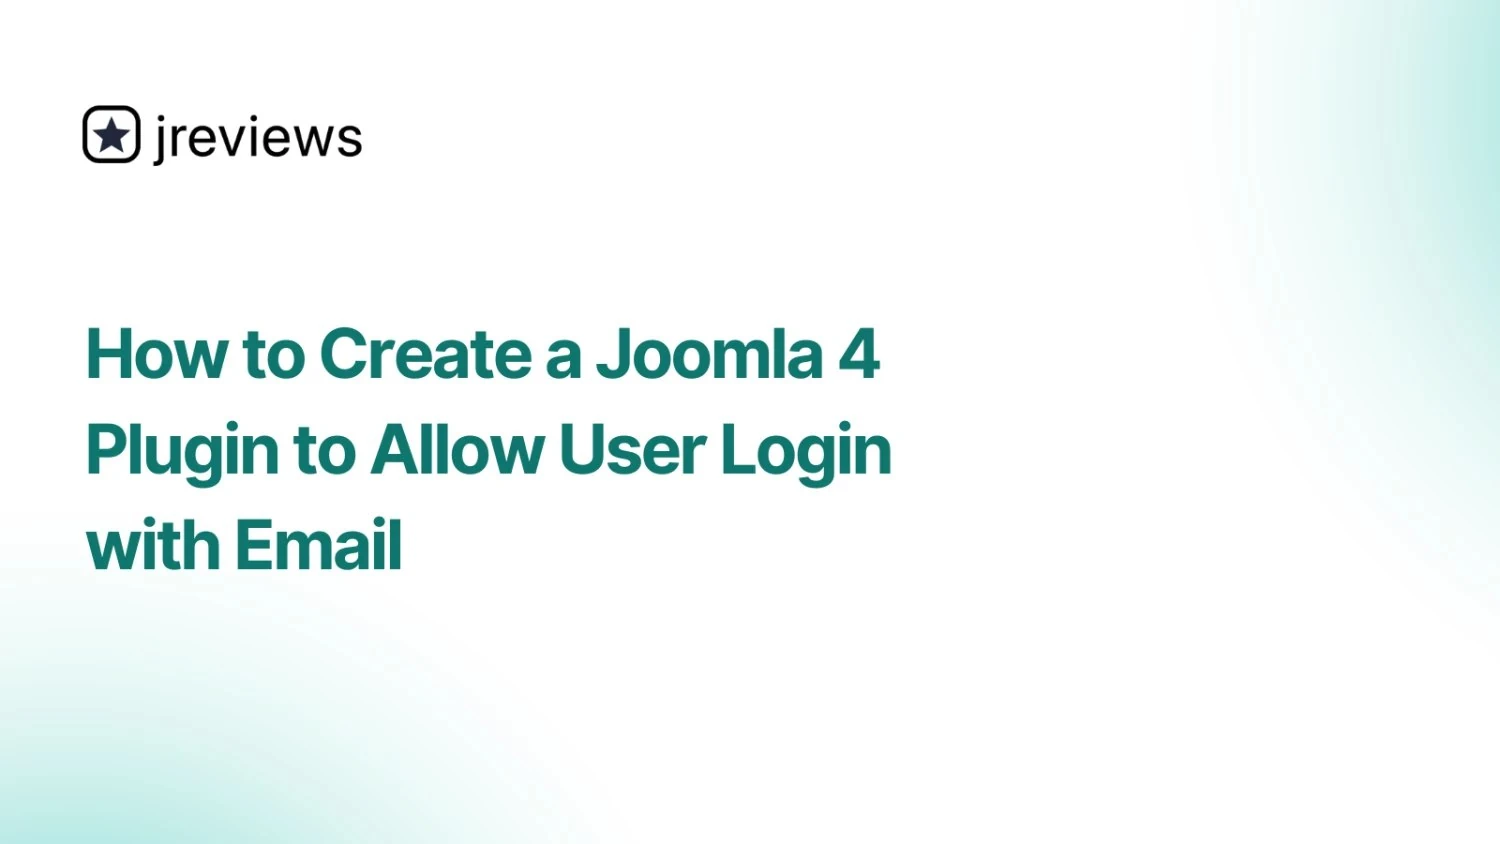 Статья Как создать плагин для Joomla 4 для авторизации пользователя по email (How to Create a Joomla 4 Plugin to Allow User Login with Email)